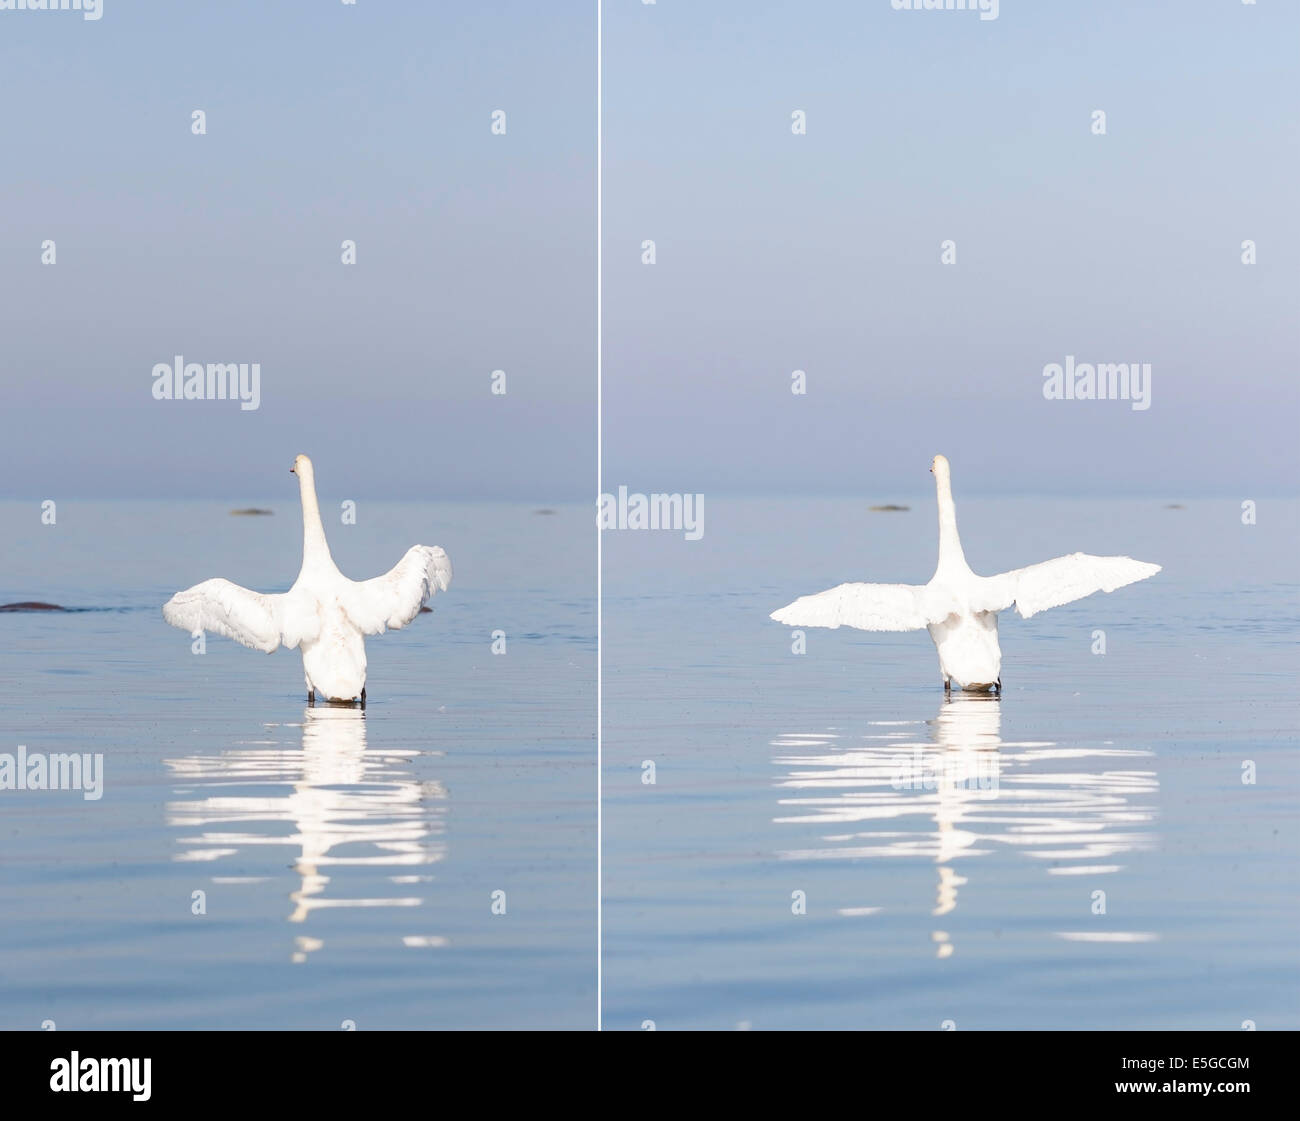 El White Swan alas abiertas se encuentra en el mar Foto de stock